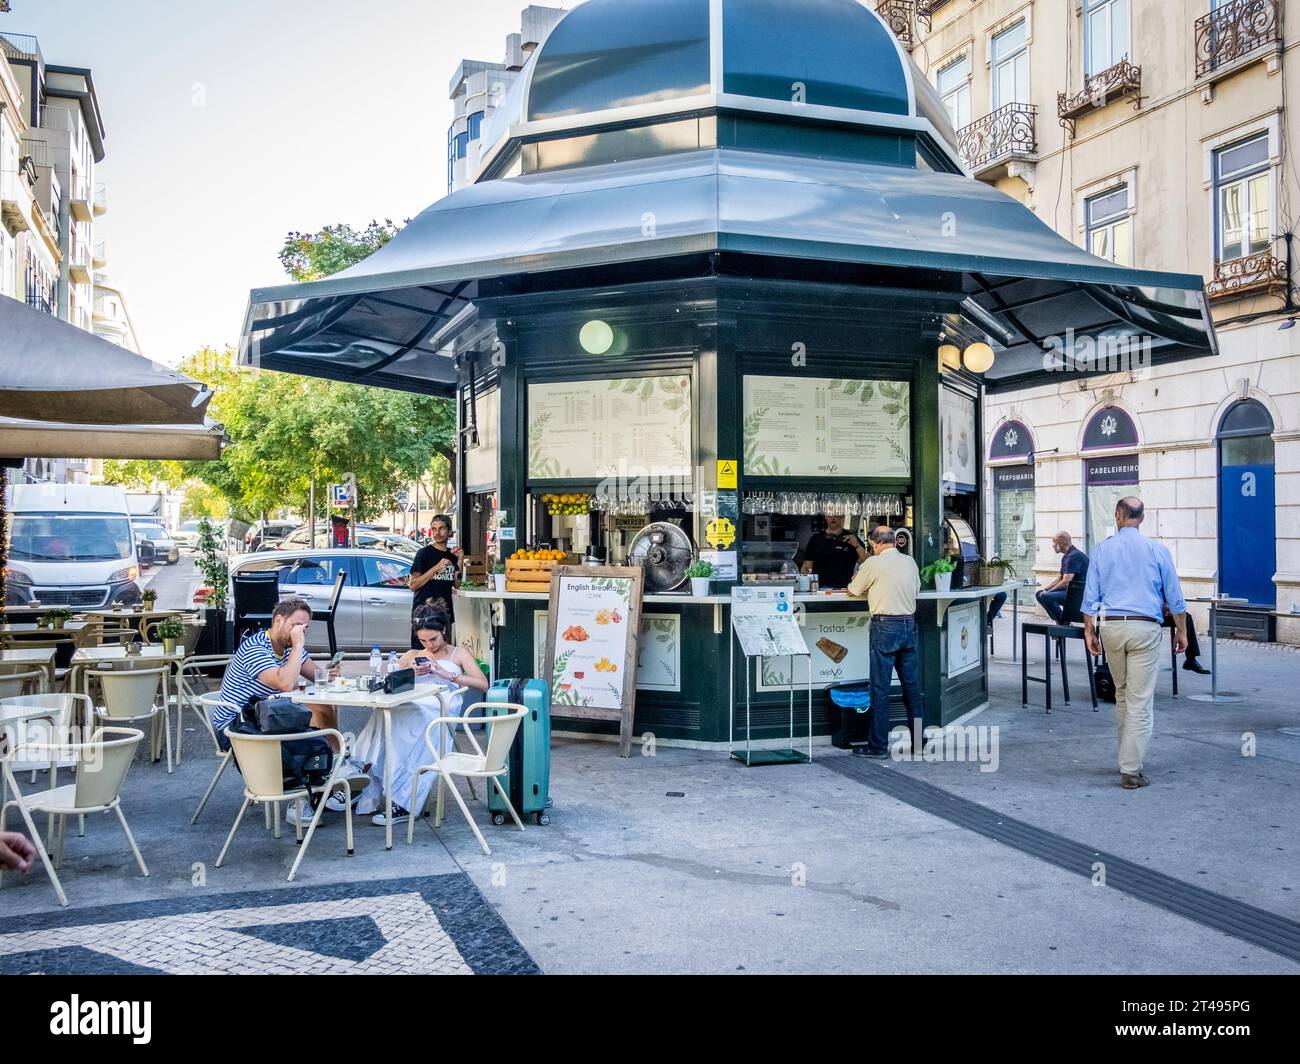 Outdoor cafe on Praça do Duque de Saldanha or Duke of Saldanha Square in Lisbon Portugal Stock Photo